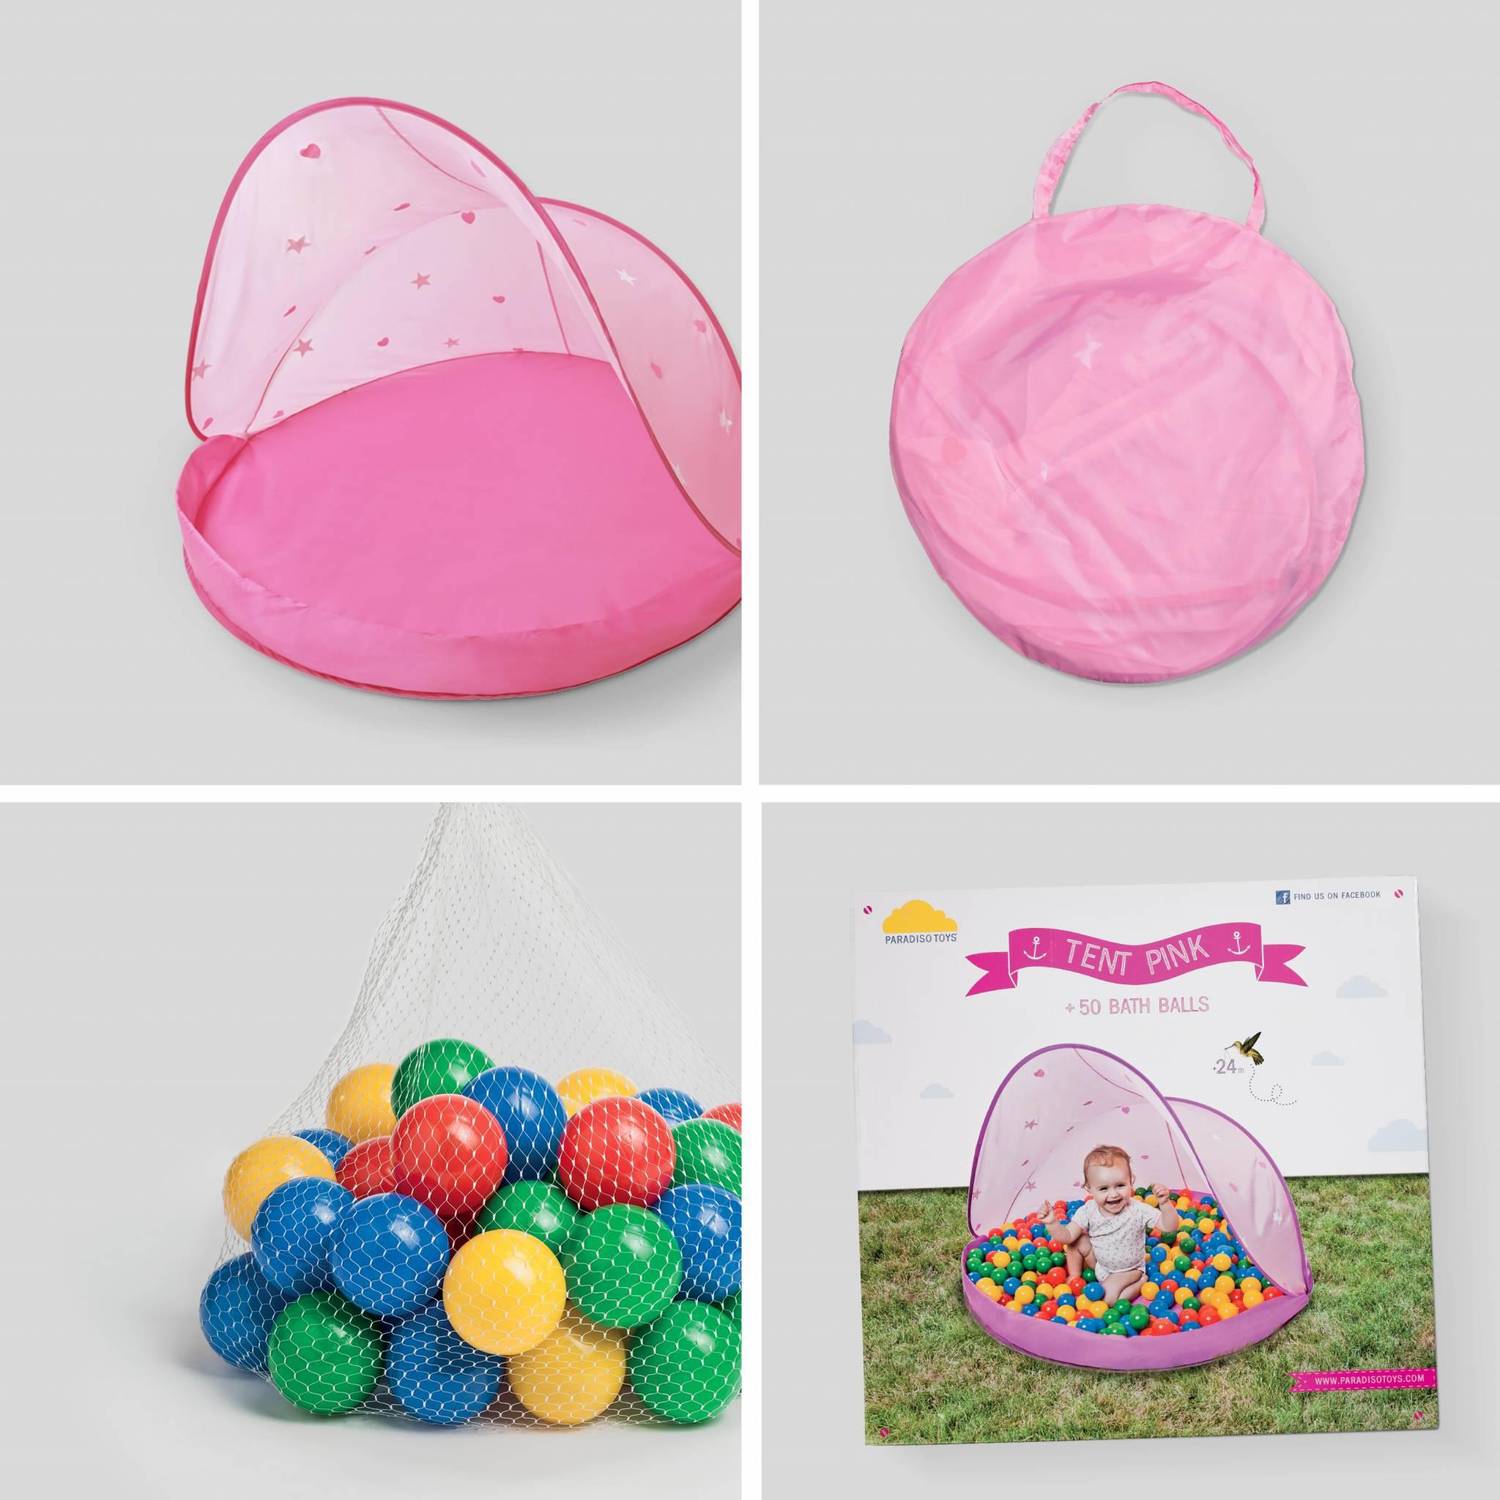 Tente de jeu pop-up rose pour enfants – Paulette, tente de protection solaire avec 50 balles Photo2